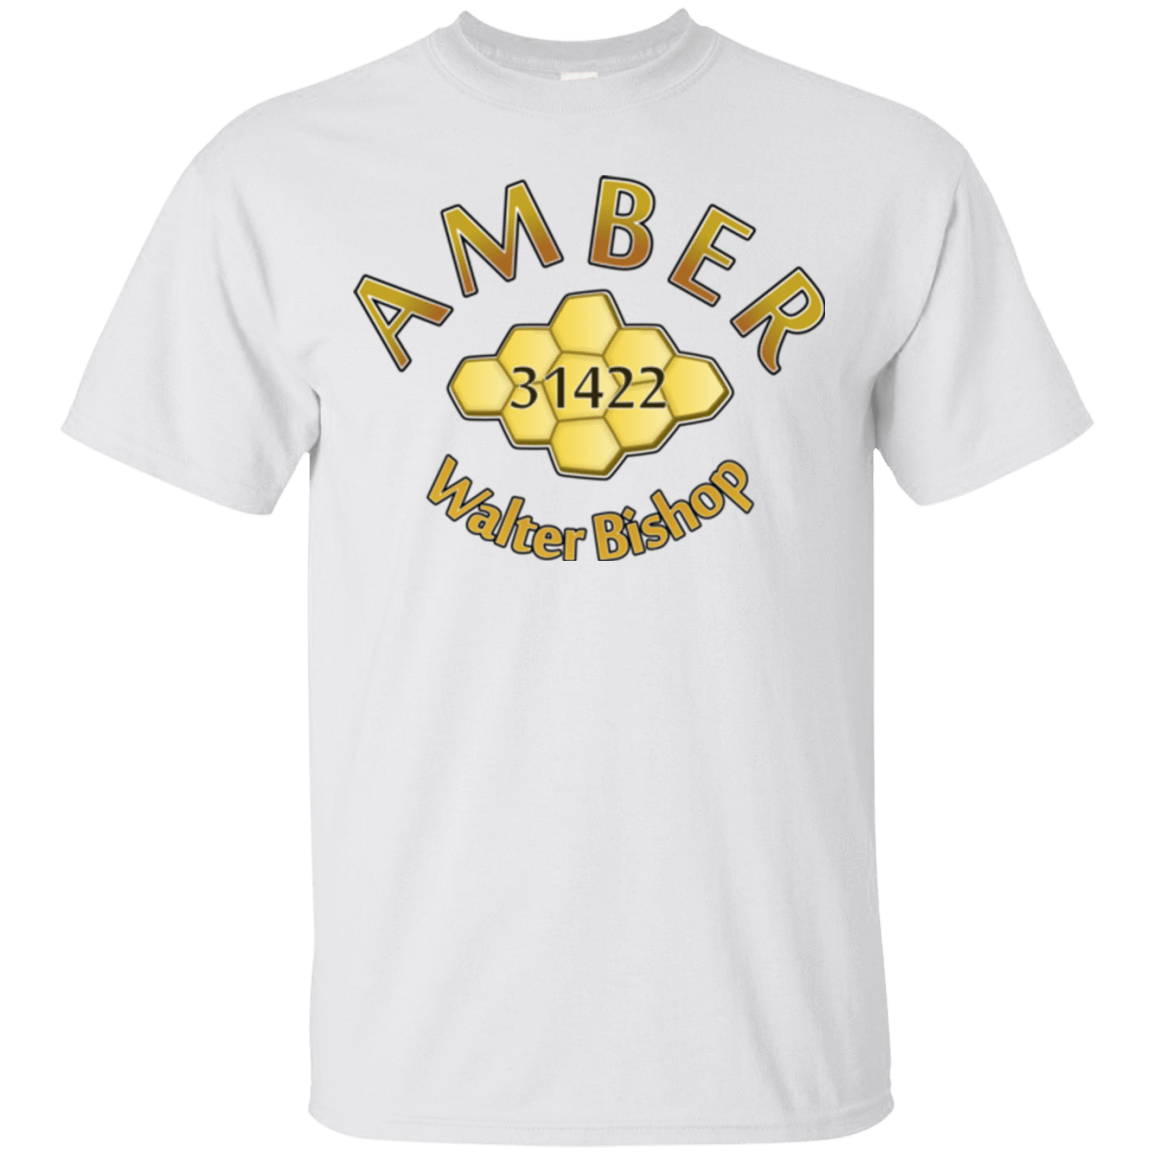 T-Shirts White / Small Amber T-Shirt